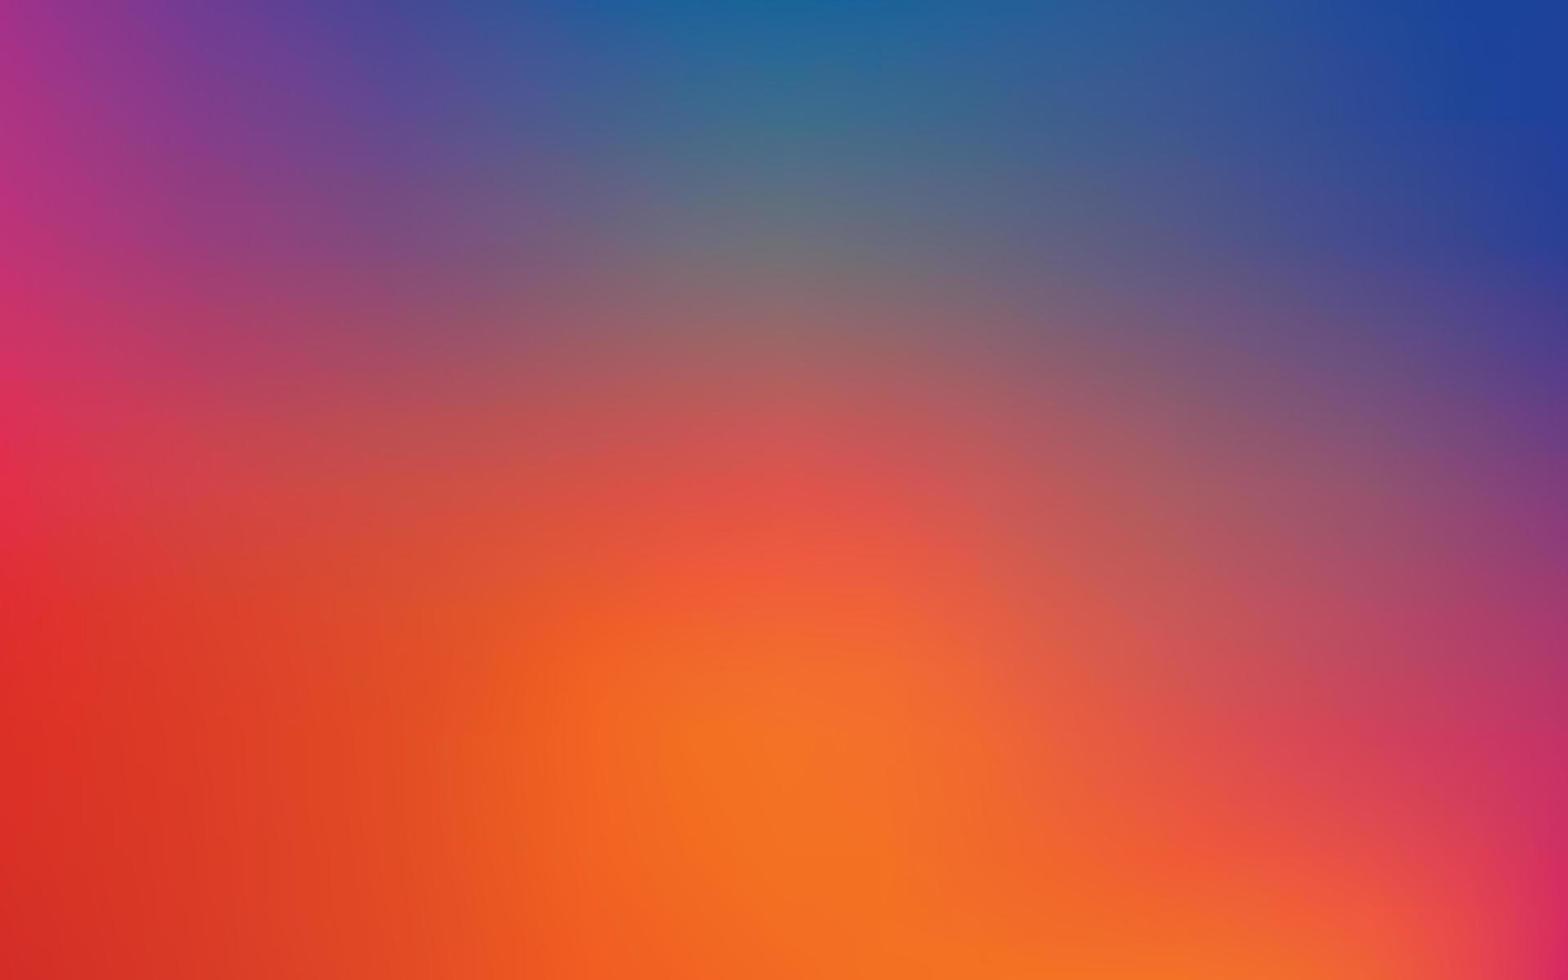 fundo de vetor de gradação de cores, layout horizontal. design de pano de fundo abstrato com efeito de contraste vívido, saturação dramática, estilo futurista moderno. cor misturando malha de gradiente azul, vermelho, laranja.